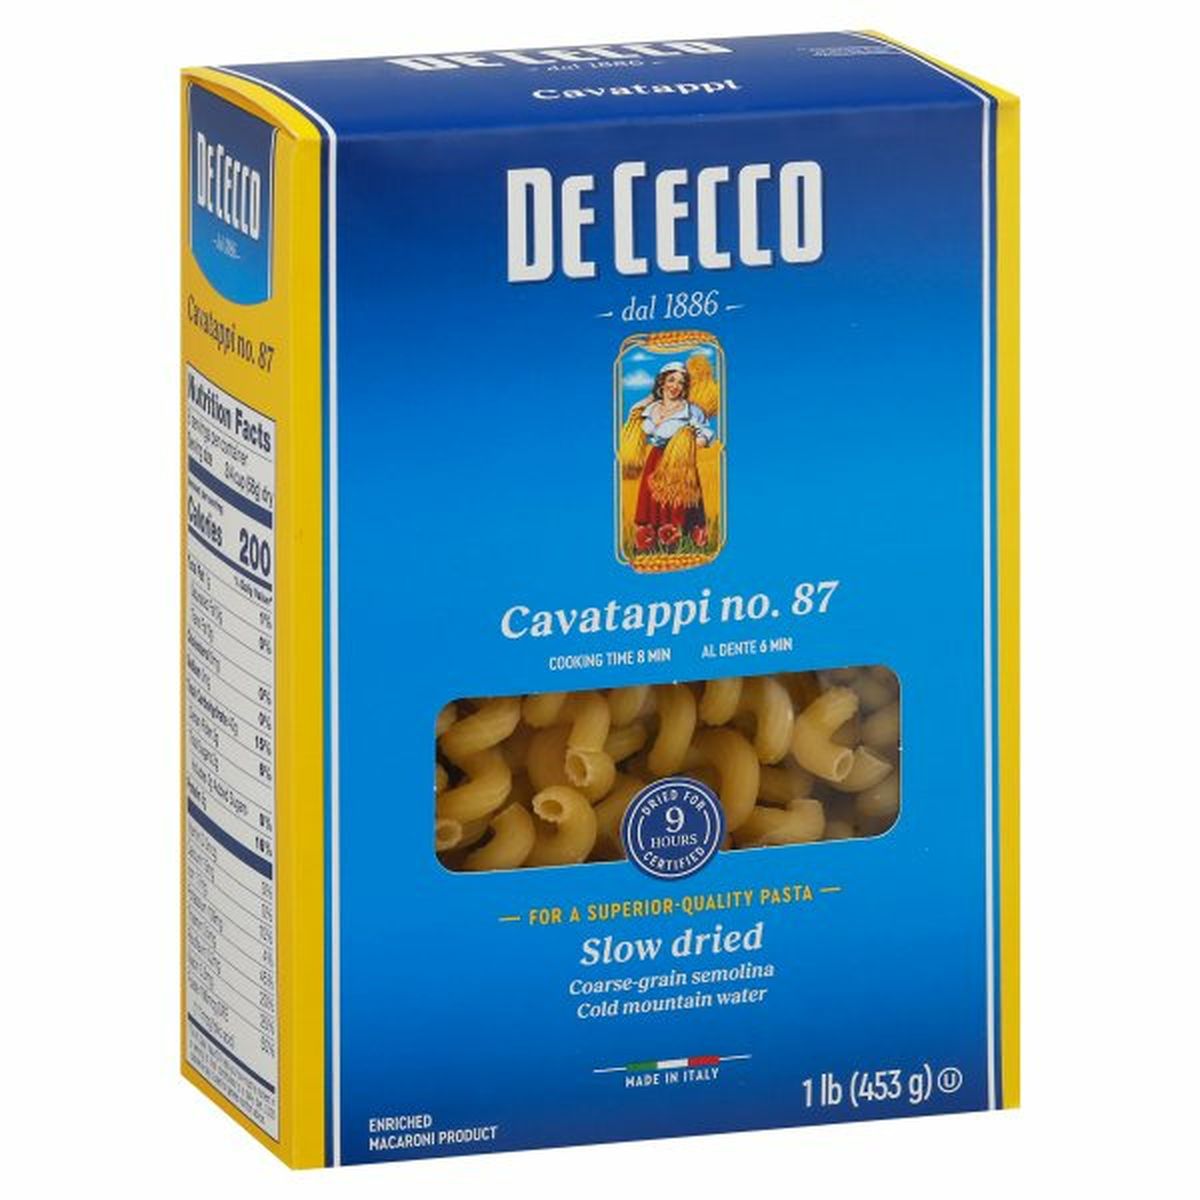 Calories in De Cecco Cavatappi, No. 87, Slow Dried